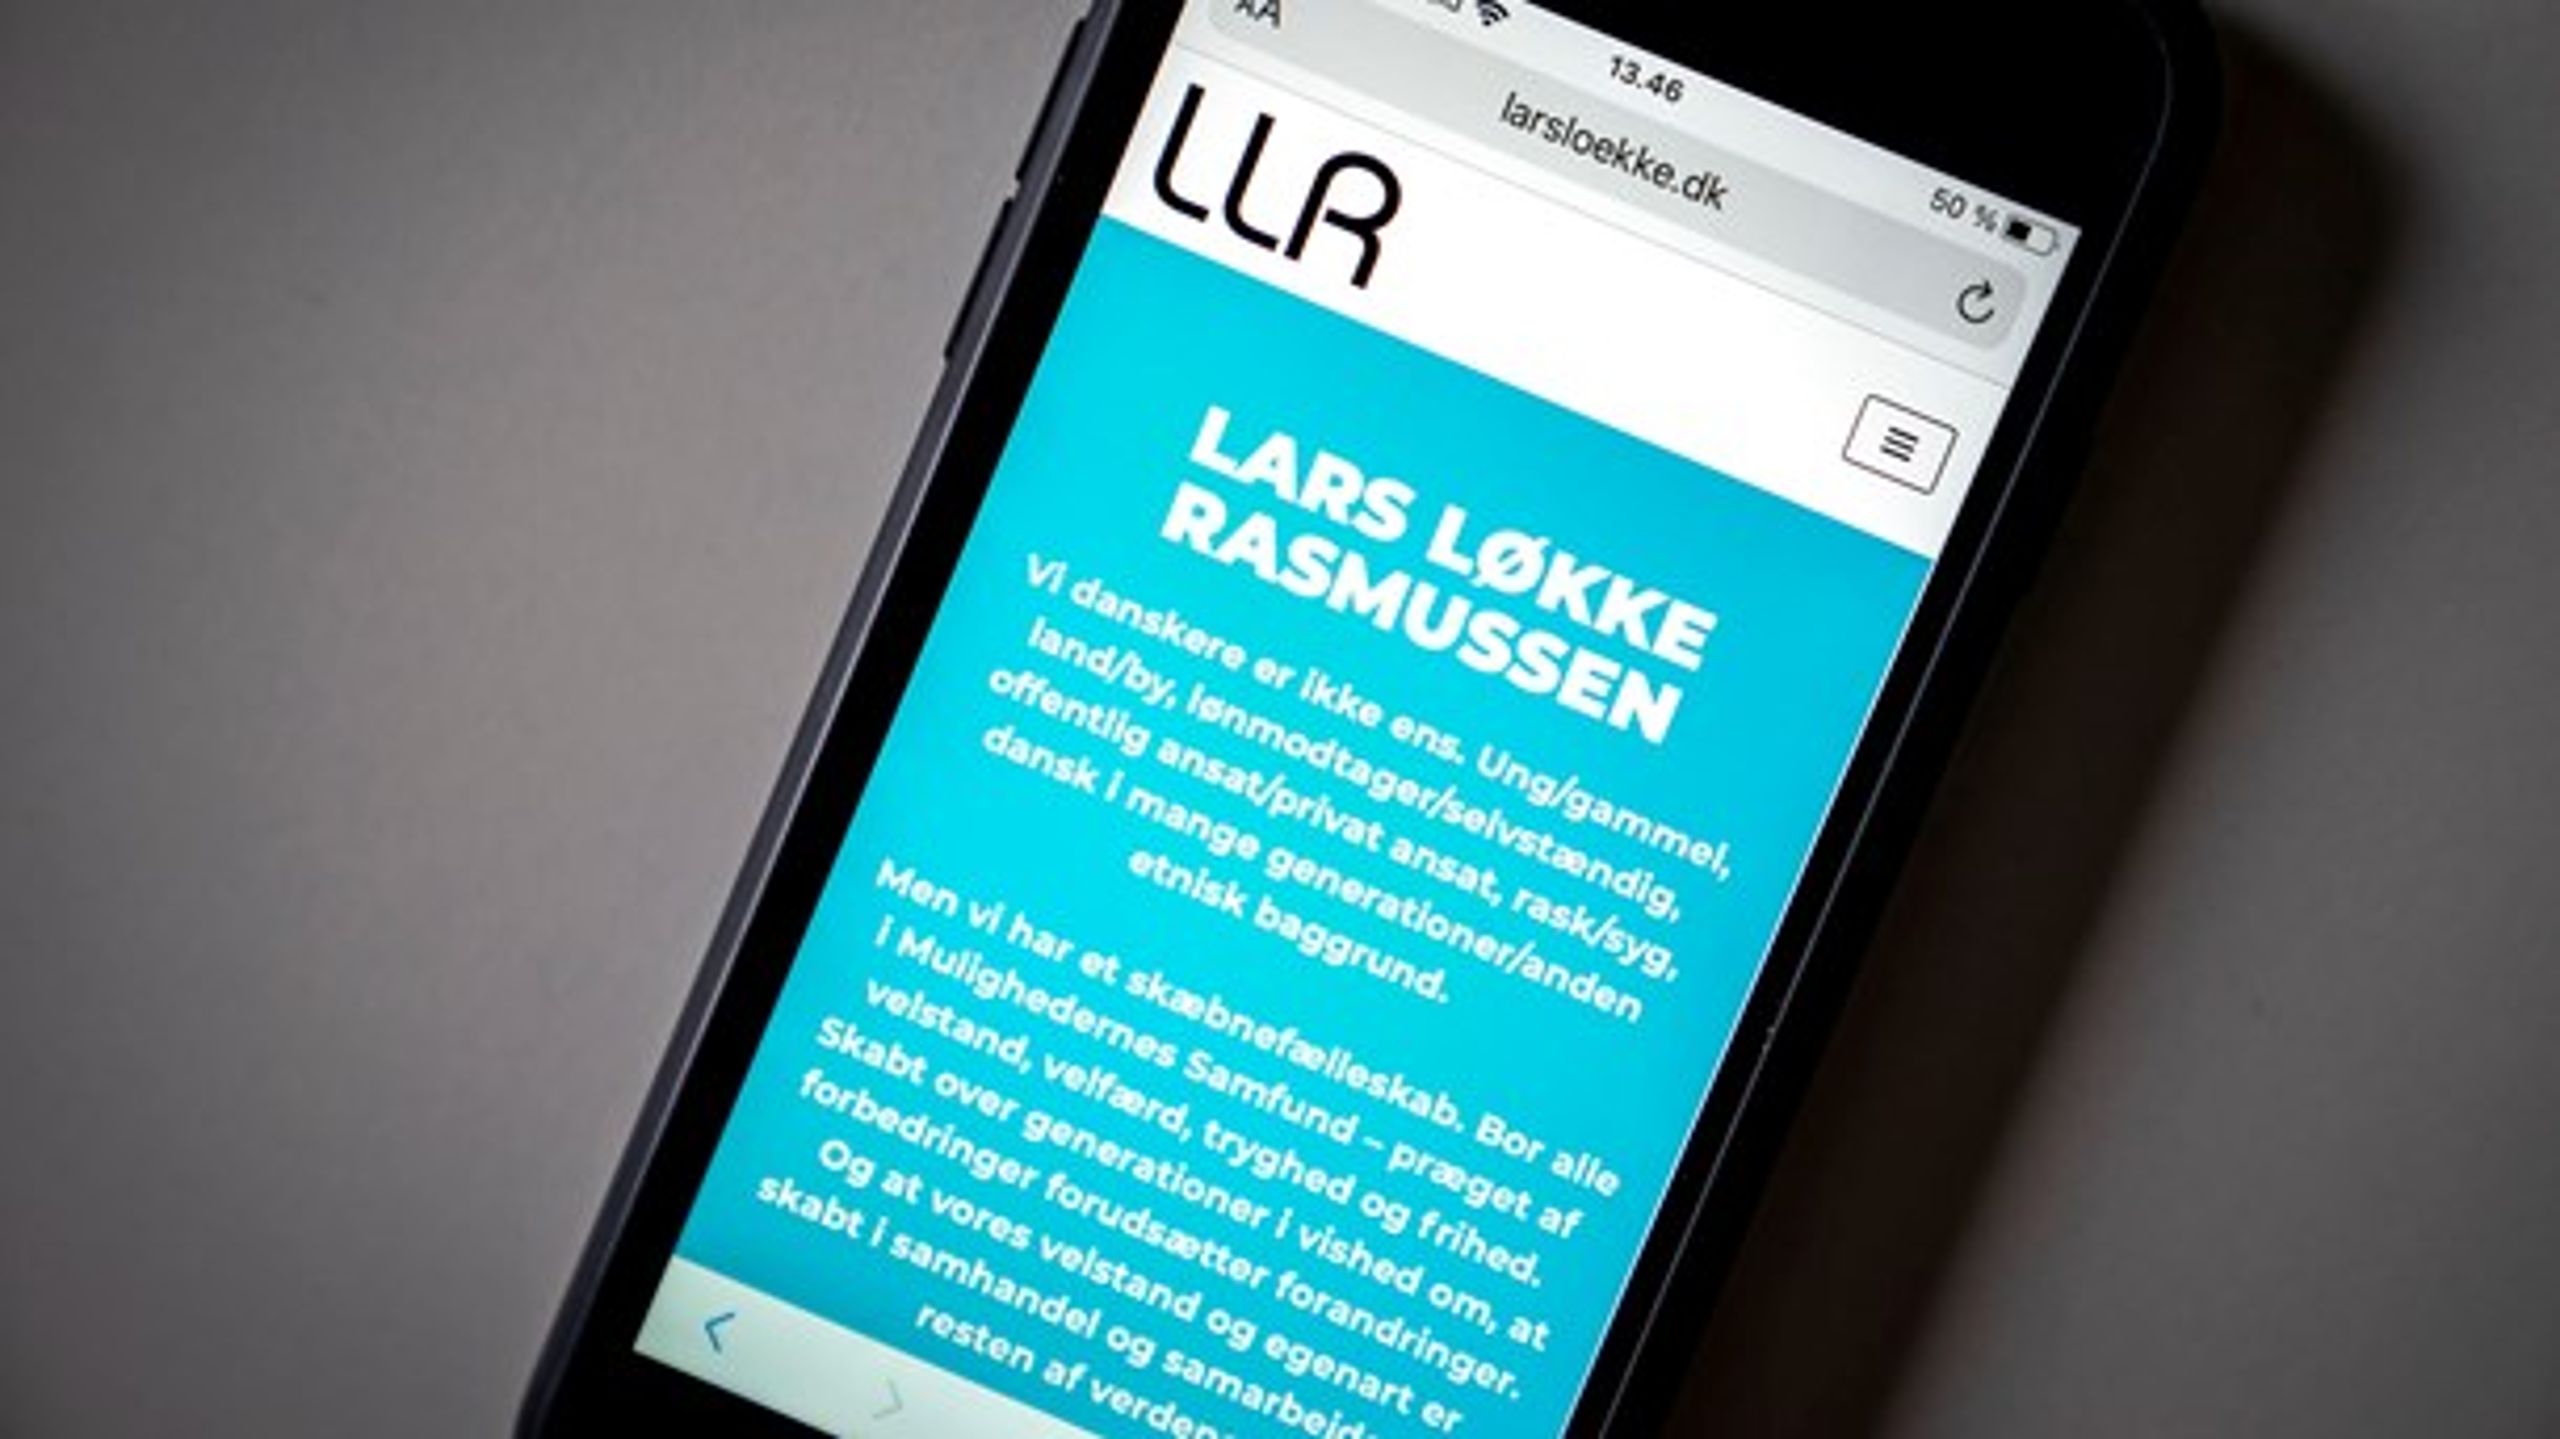 LLR synes foreløbig at være navnet på Lars Løkke Rasmussens nye netværk